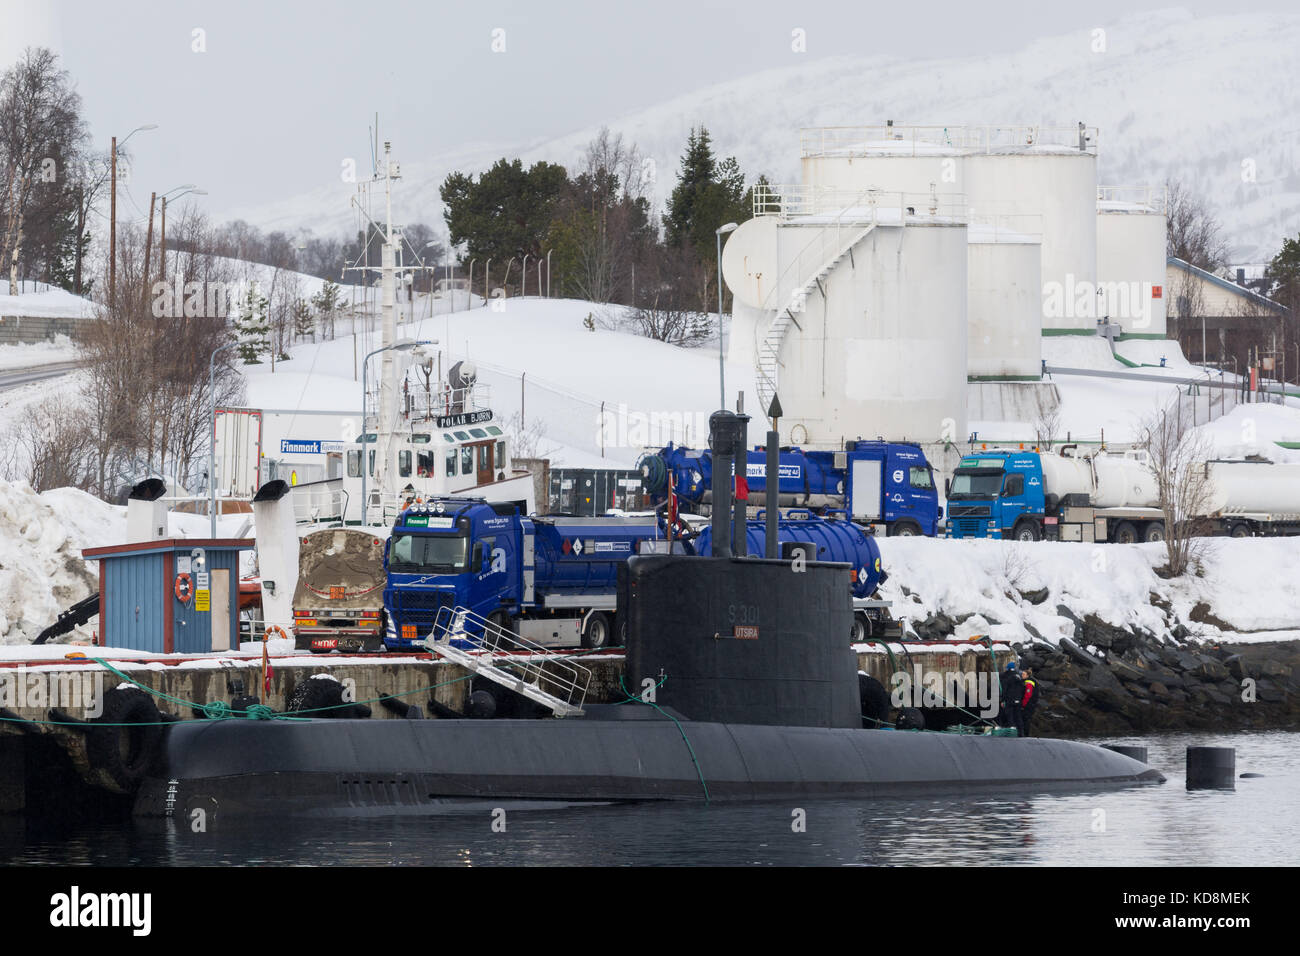 Norwegian submarine ula-class at harbor Stock Photo